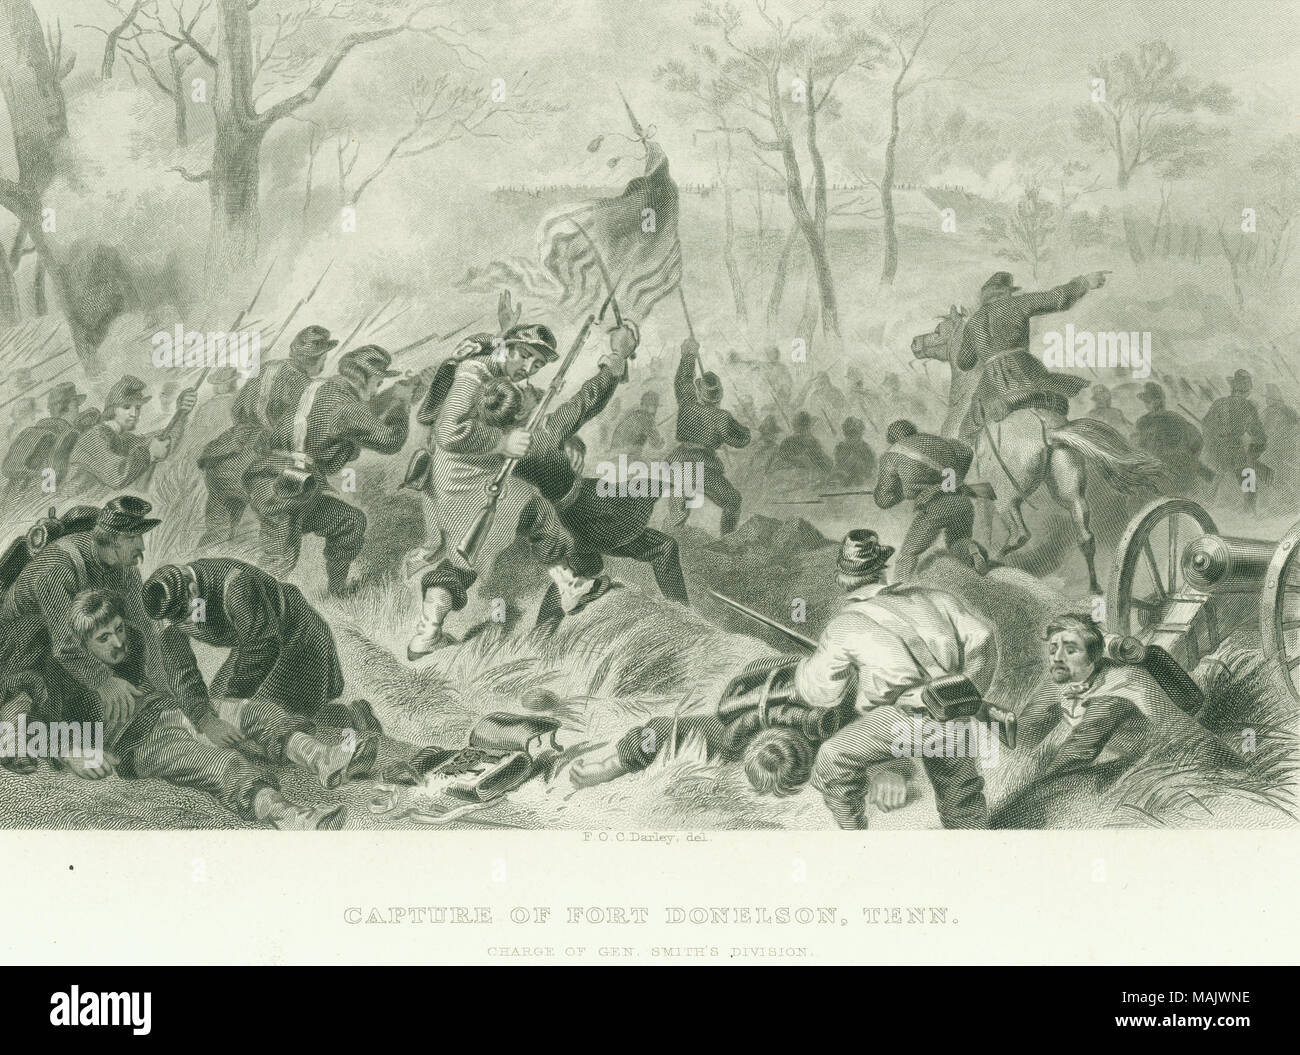 Les troupes de l'Union de l'imprimer en premier plan fort chargement en arrière-plan. Cannon et un homme à cheval et un autre homme l'exercice de l'Union, également en premier plan. 'CAPTURE DU FORT DONELSON, TENN. CHARGE DE GEN. SMITH'S DIVISION.' (imprimé ci-dessous l'image). À partir de : "La Grande Guerre Civile. Tome II Par Robt. Towes, M. D. et Benjamin G. Smith publiée par Viste [ ?] et [ ?] Yorston, 1865' (écrit sur le verso). Titre : 'Capture du Fort Donelson, Tenn. responsable de la Division du général Smith.' . 1865. Gratuit Darley Banque D'Images